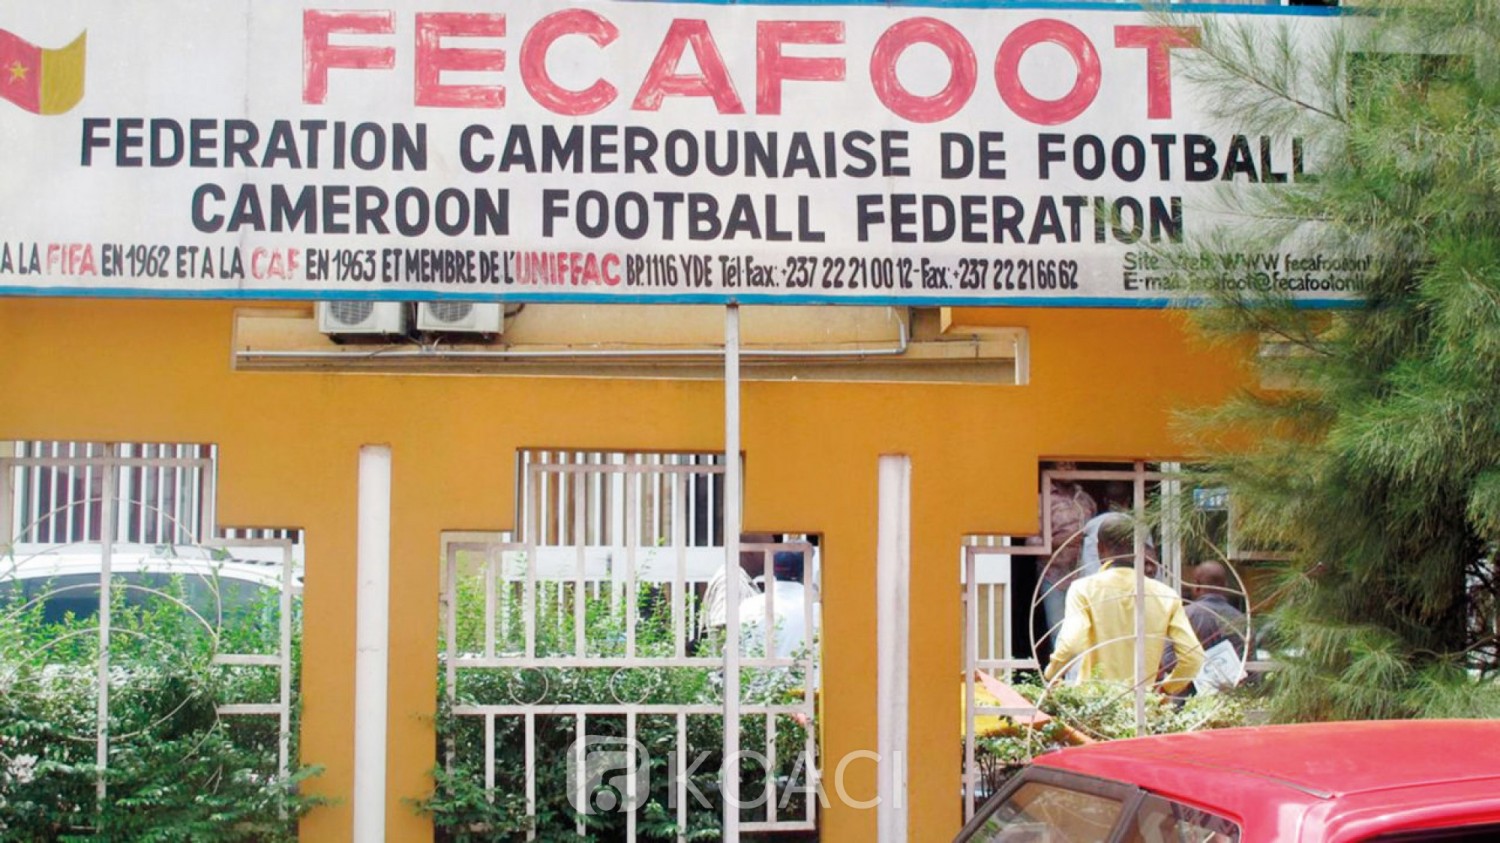 Cameroun : La police interpelle des présidents de clubs opposés à la FIFA qui réhabilite la Fecafoot